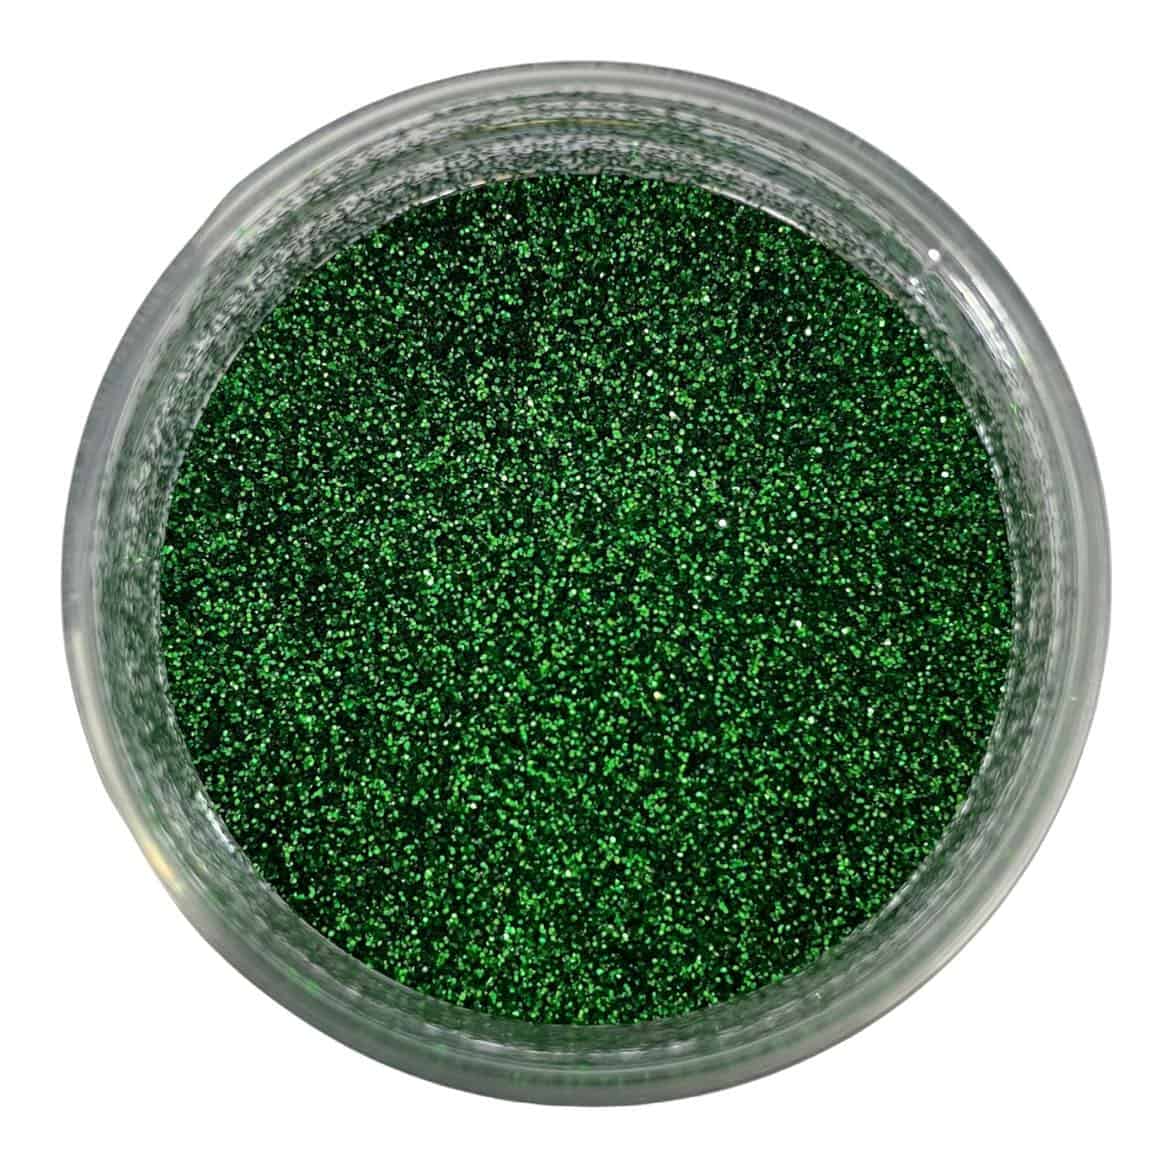 Biodegradable Emerald Green Glitter